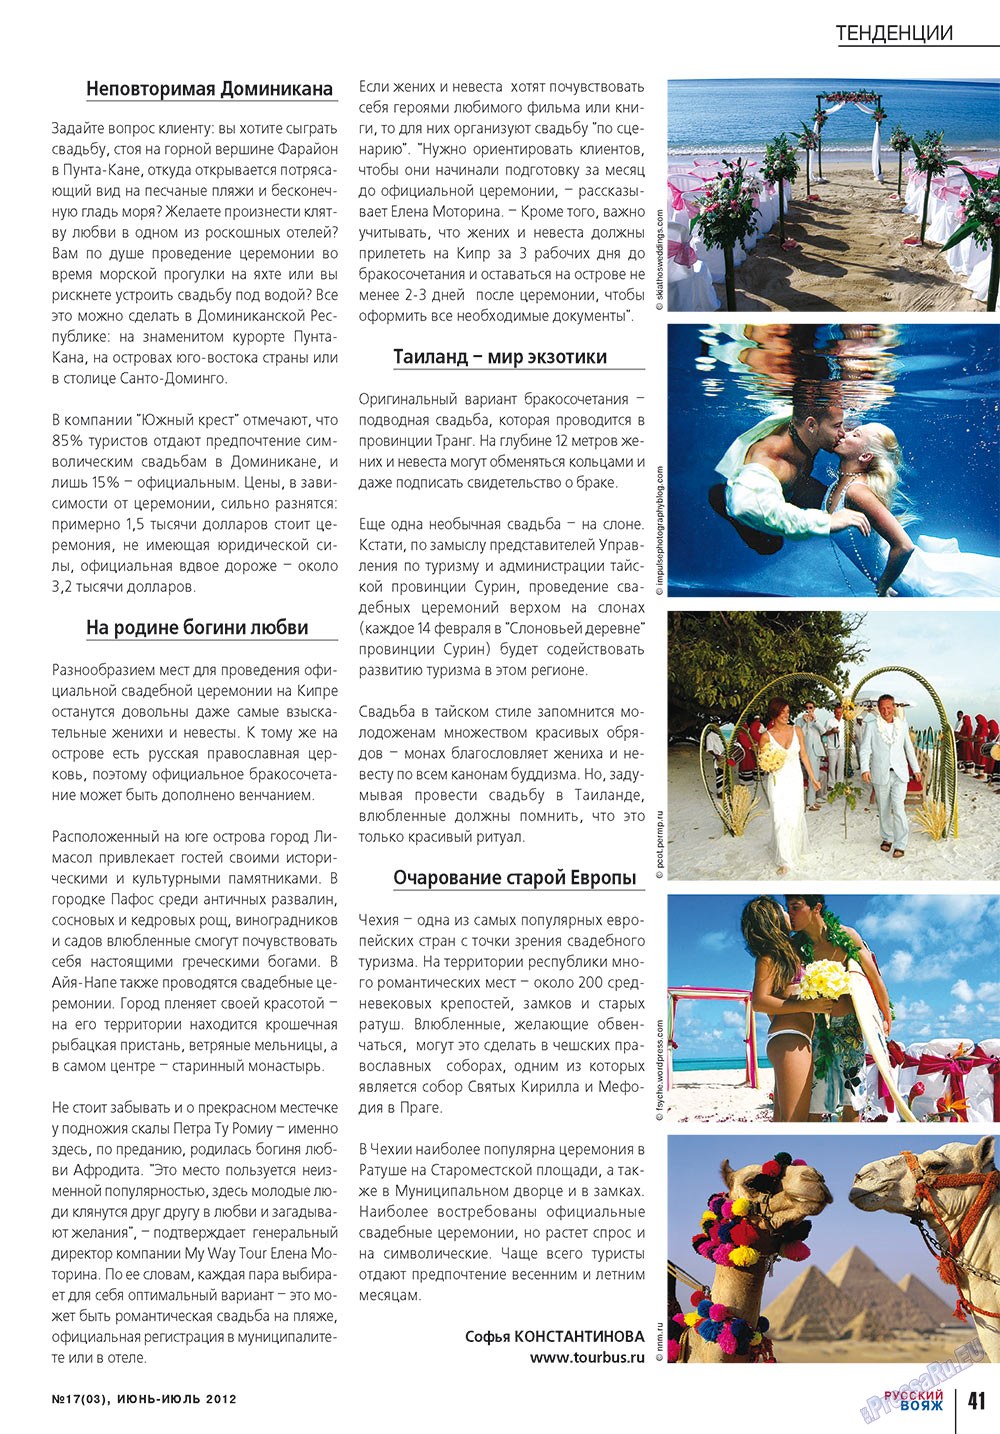 Русский вояж, журнал. 2012 №17 стр.41